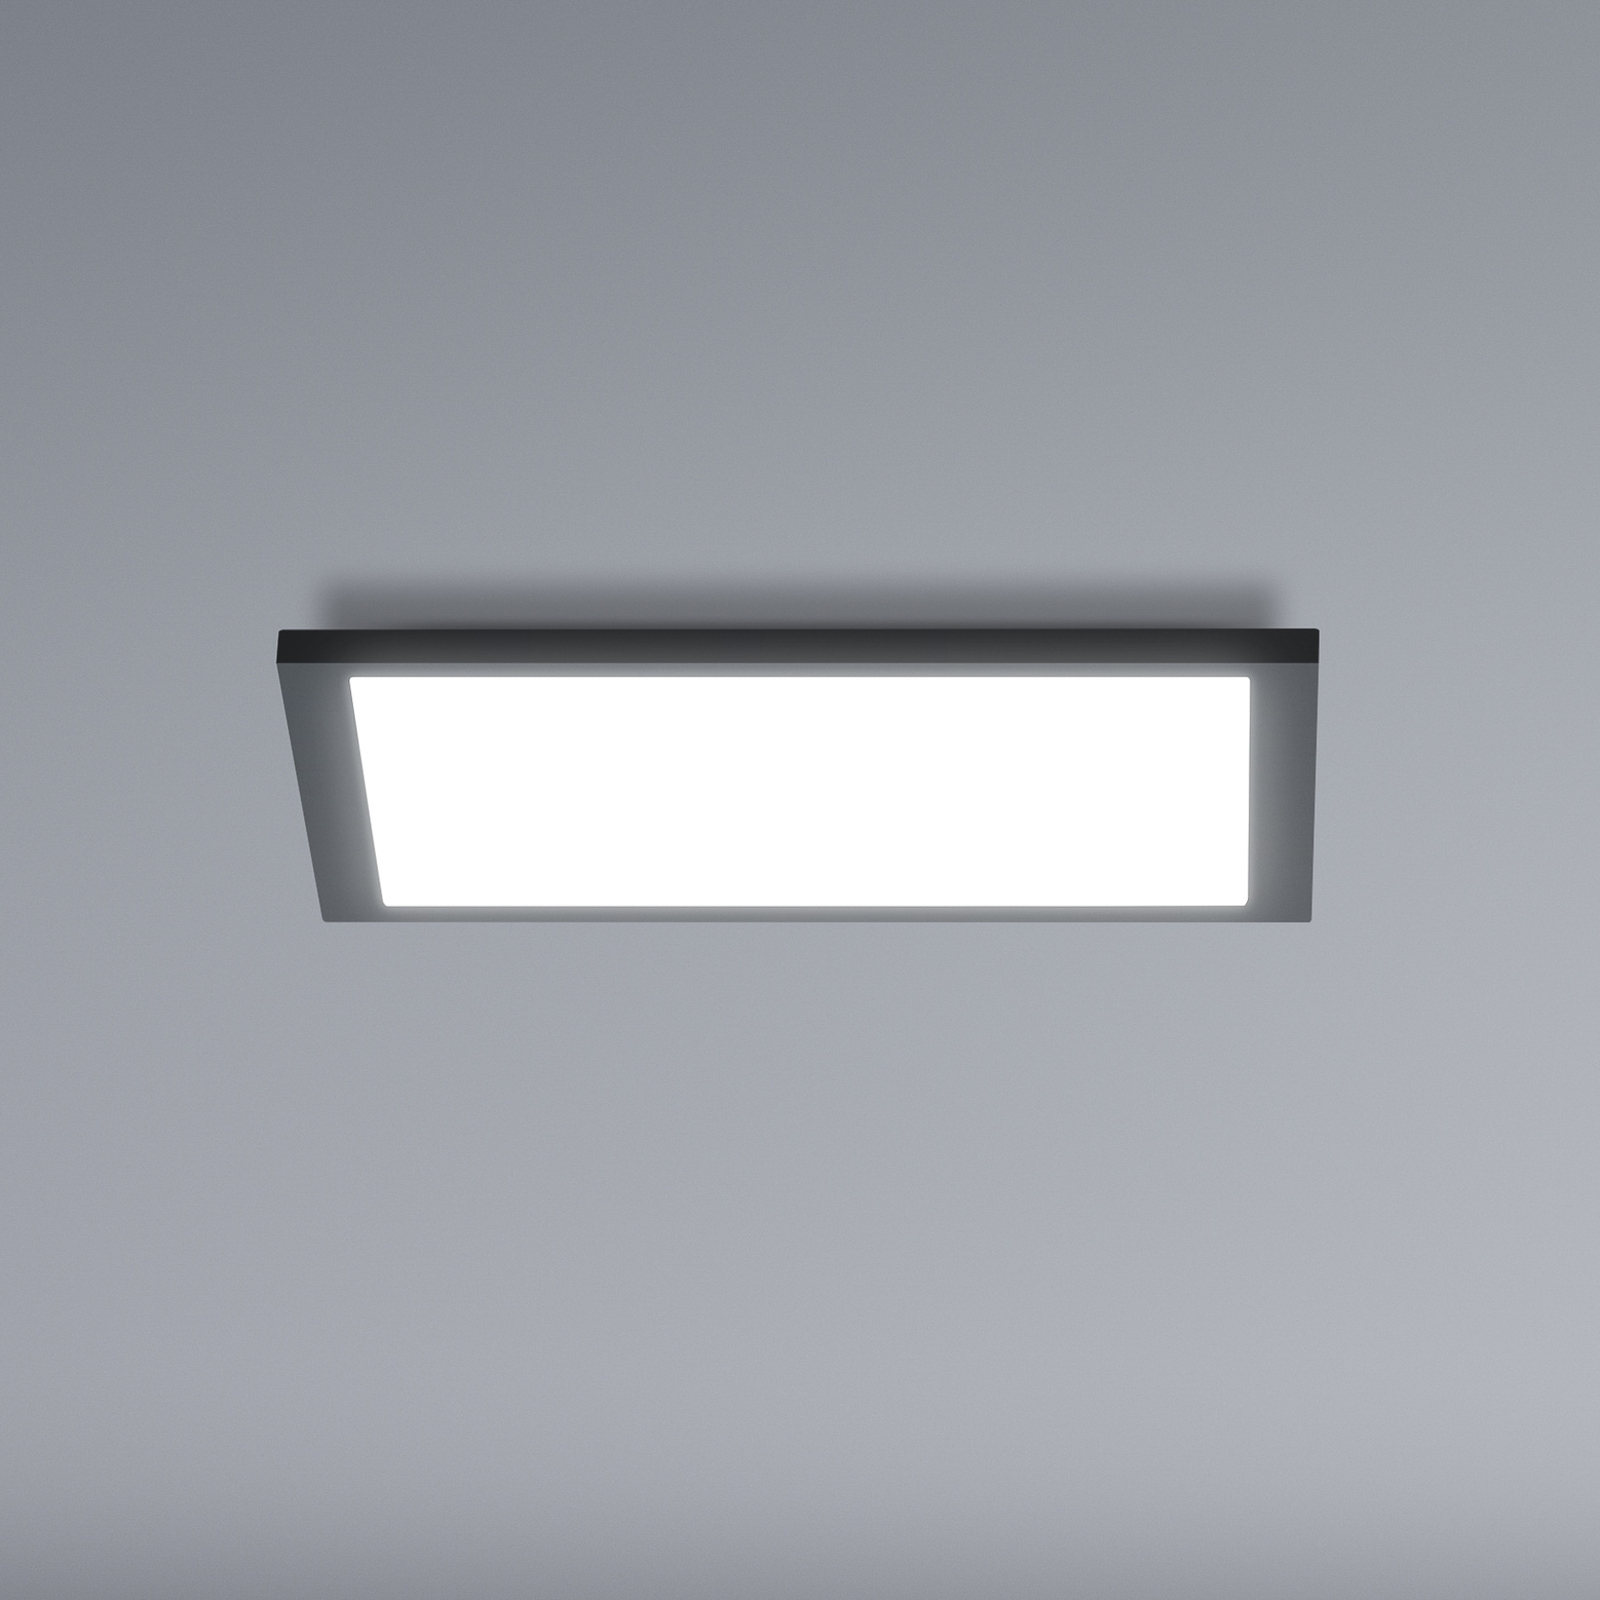 WiZ LED ceiling light panel, black, 30x30 cm